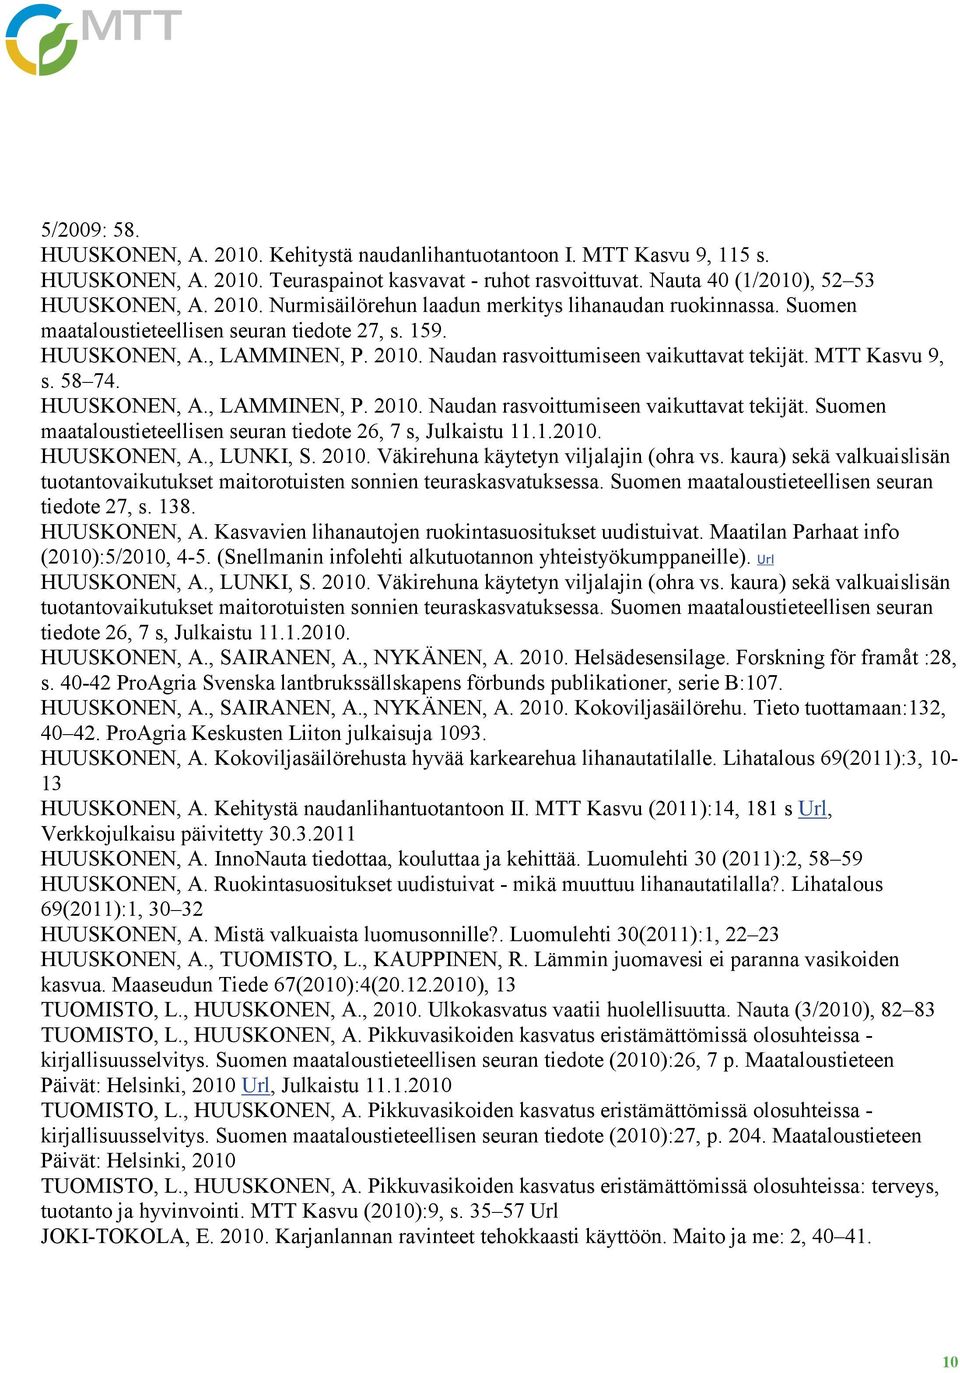 1.2010. HUUSKONEN, A., LUNKI, S. 2010. Väkirehuna käytetyn viljalajin (ohra vs. kaura) sekä valkuaislisän tuotantovaikutukset maitorotuisten sonnien teuraskasvatuksessa.